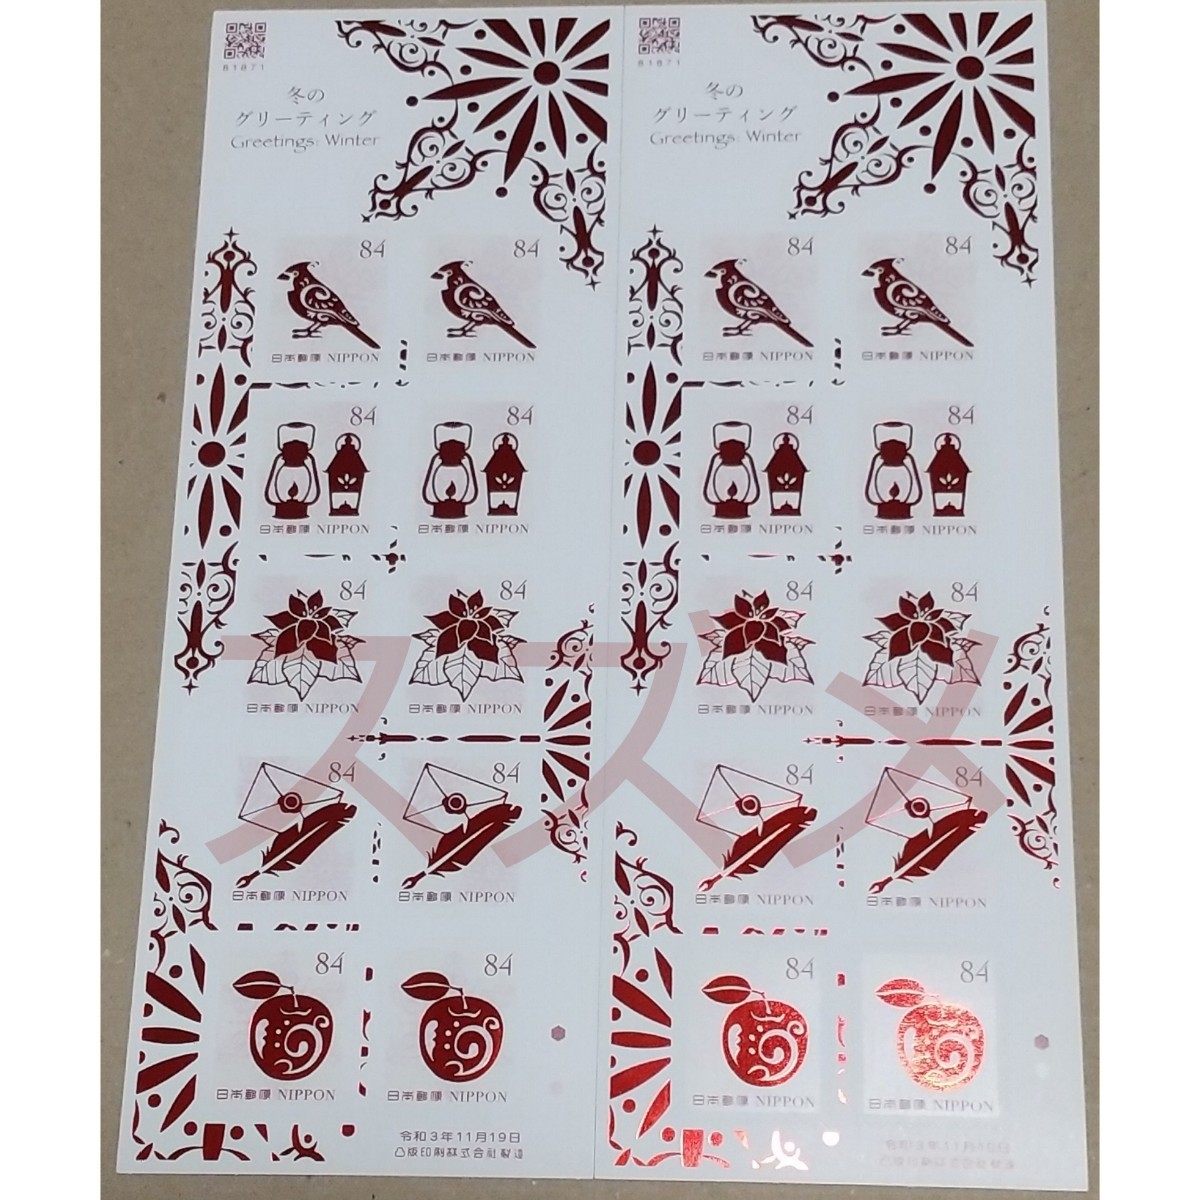 21年冬のグリーティング 84円 シール切手 2シート 1680円分  シール式切手 記念切手